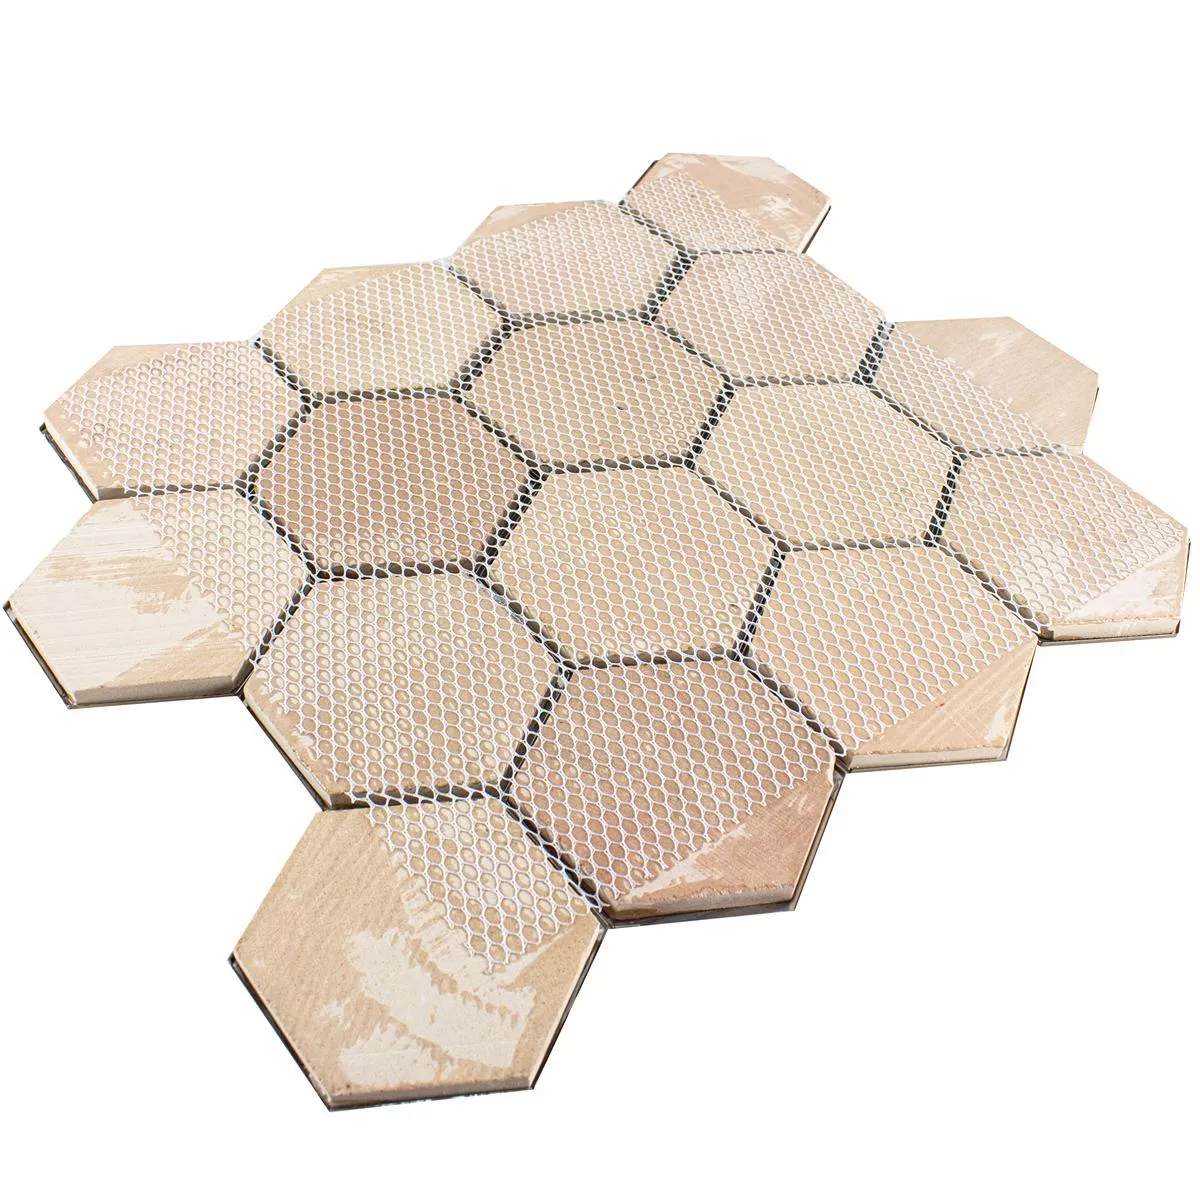 Muster von Edelstahl Mosaikfliesen Durango Hexagon 3D Kupfer